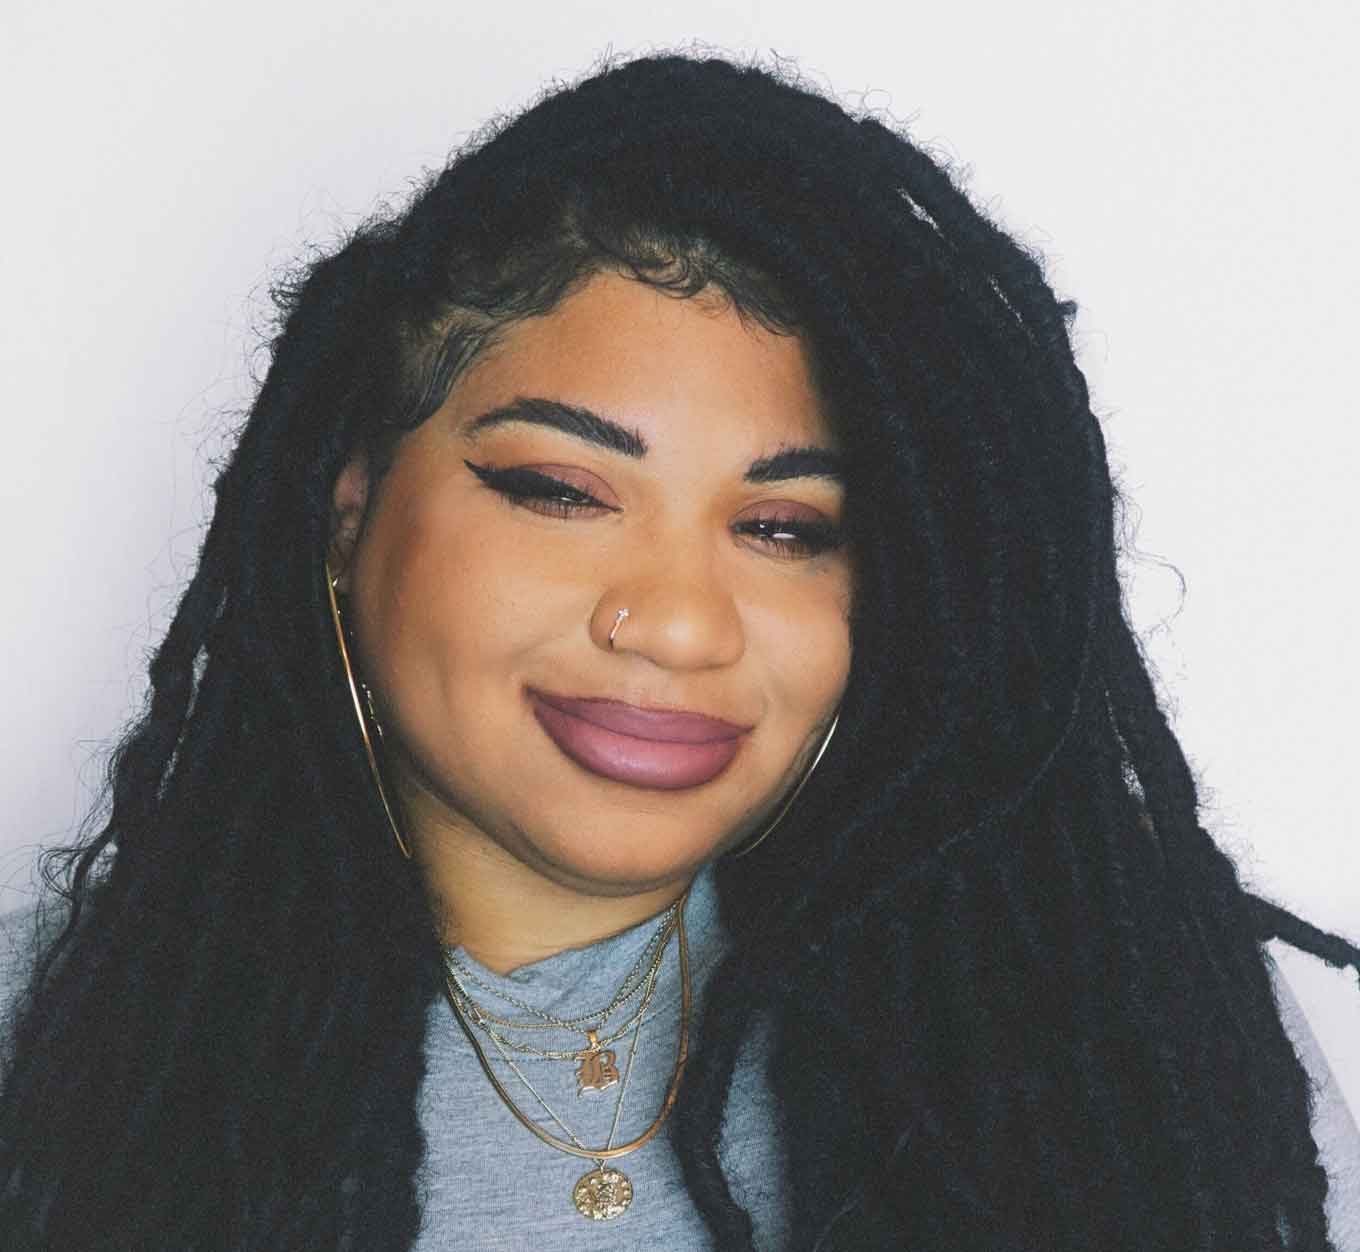 Een zwarte vrouw met dreadlocs draagt een grijs overhemd en gouden kettingen. Ze heeft roze lippenstift op en grijnst naar de camera. 